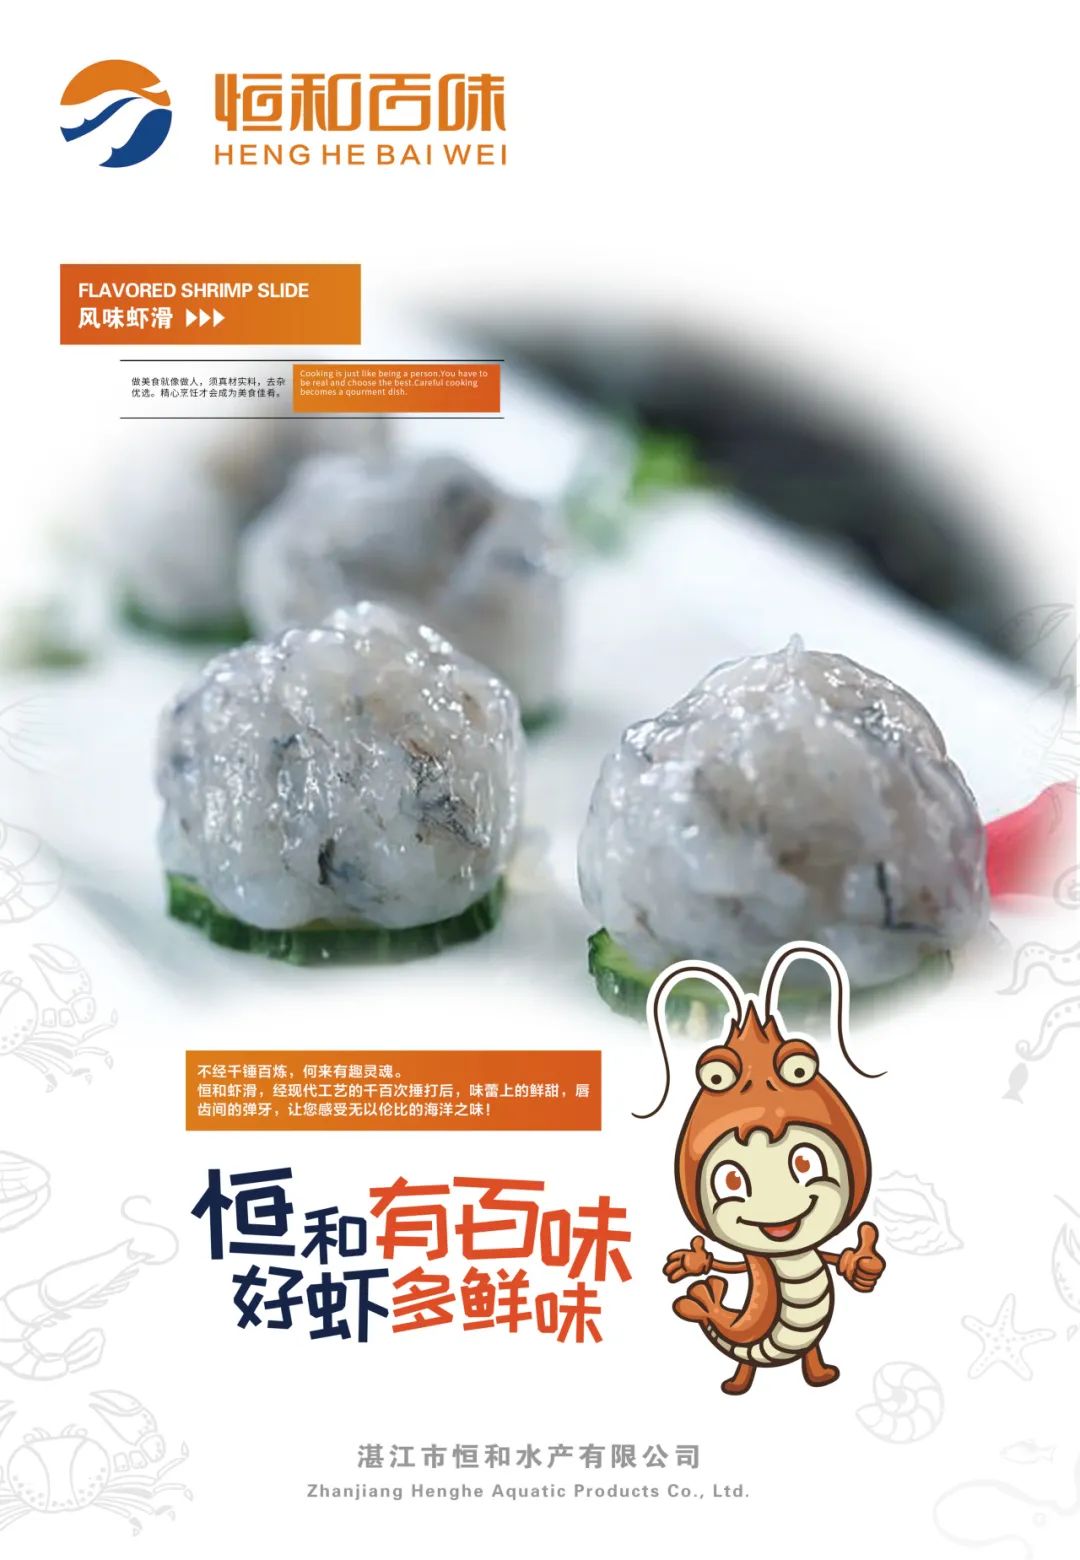 湛江市恒和水产有限公司——恒和有百味，好虾多鲜味(图10)